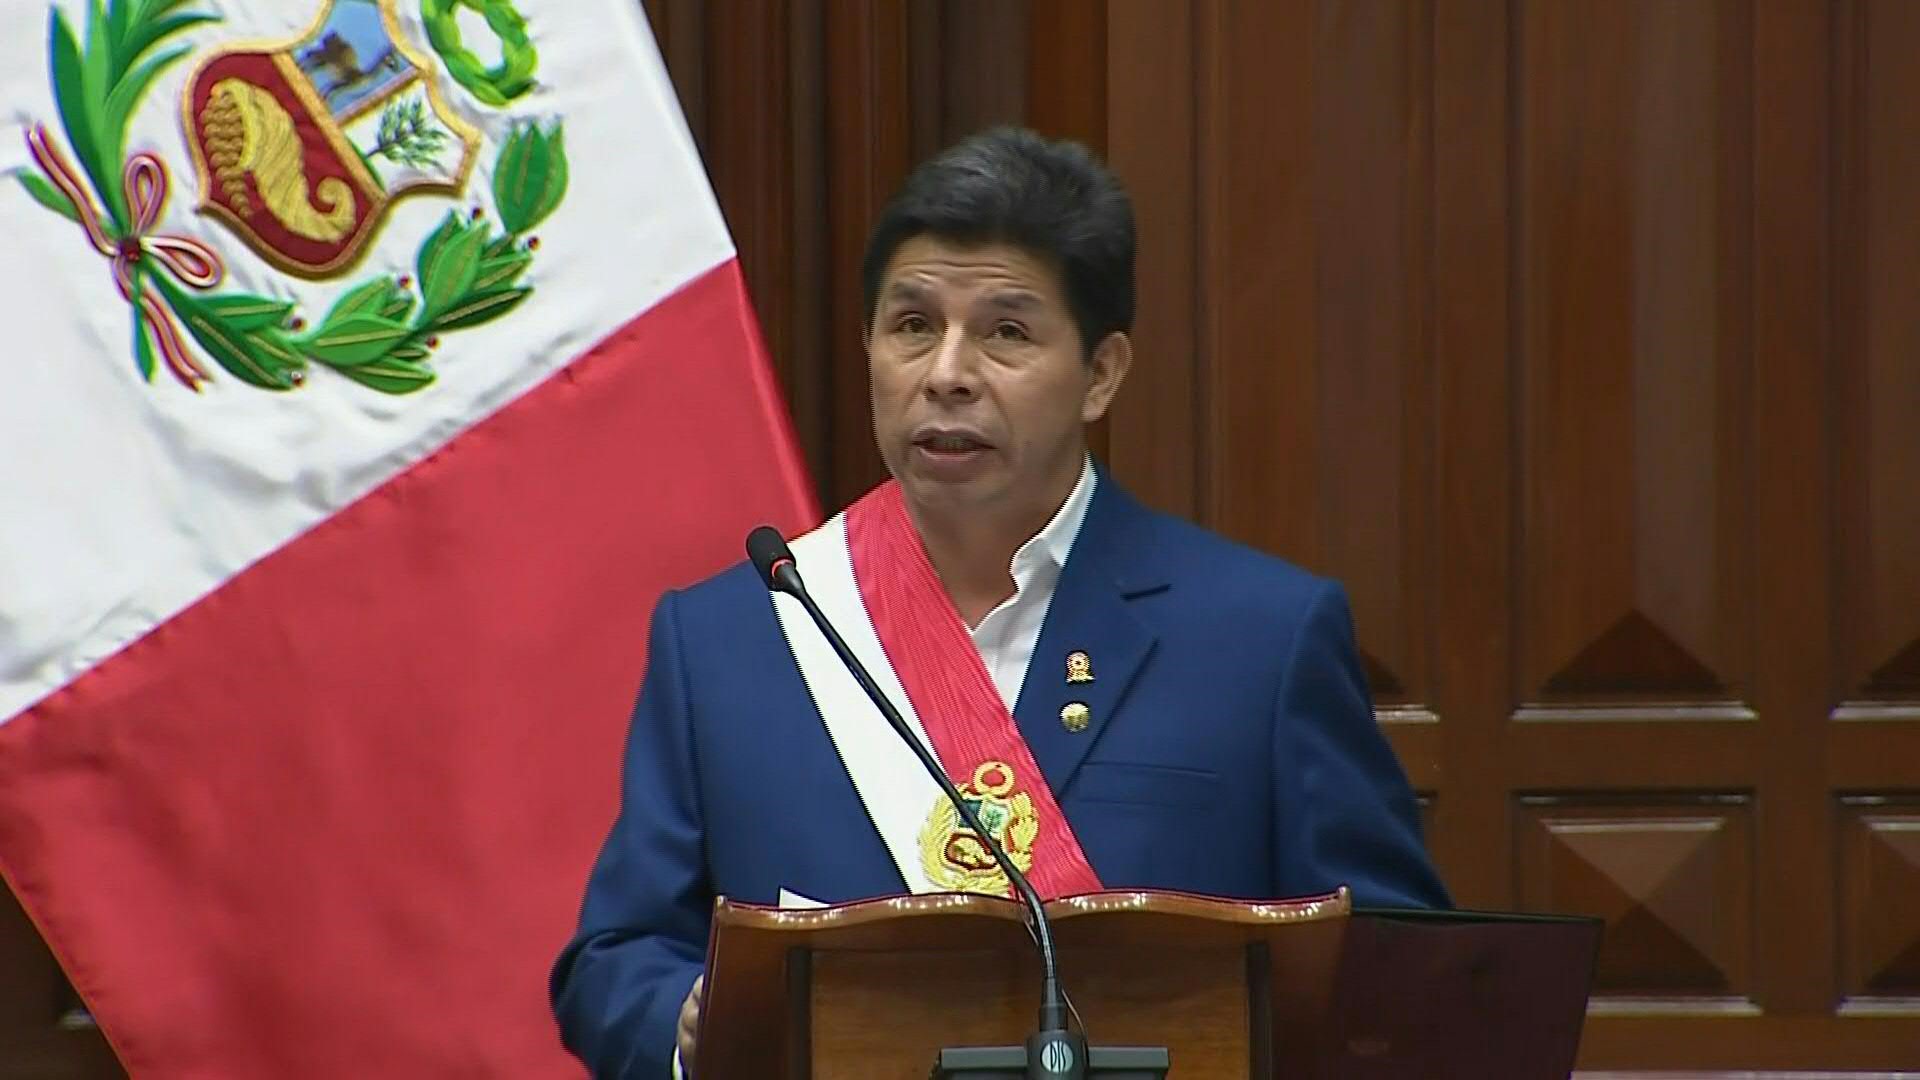 El presidente peruano, el izquierdista Pedro Castillo, defendió su gestión el jueves en un mensaje al país al cumplir su primer año de gobierno cercado por cinco investigaciones por presunta corrupción, que atribuyó a una campaña mediática para destituirlo.